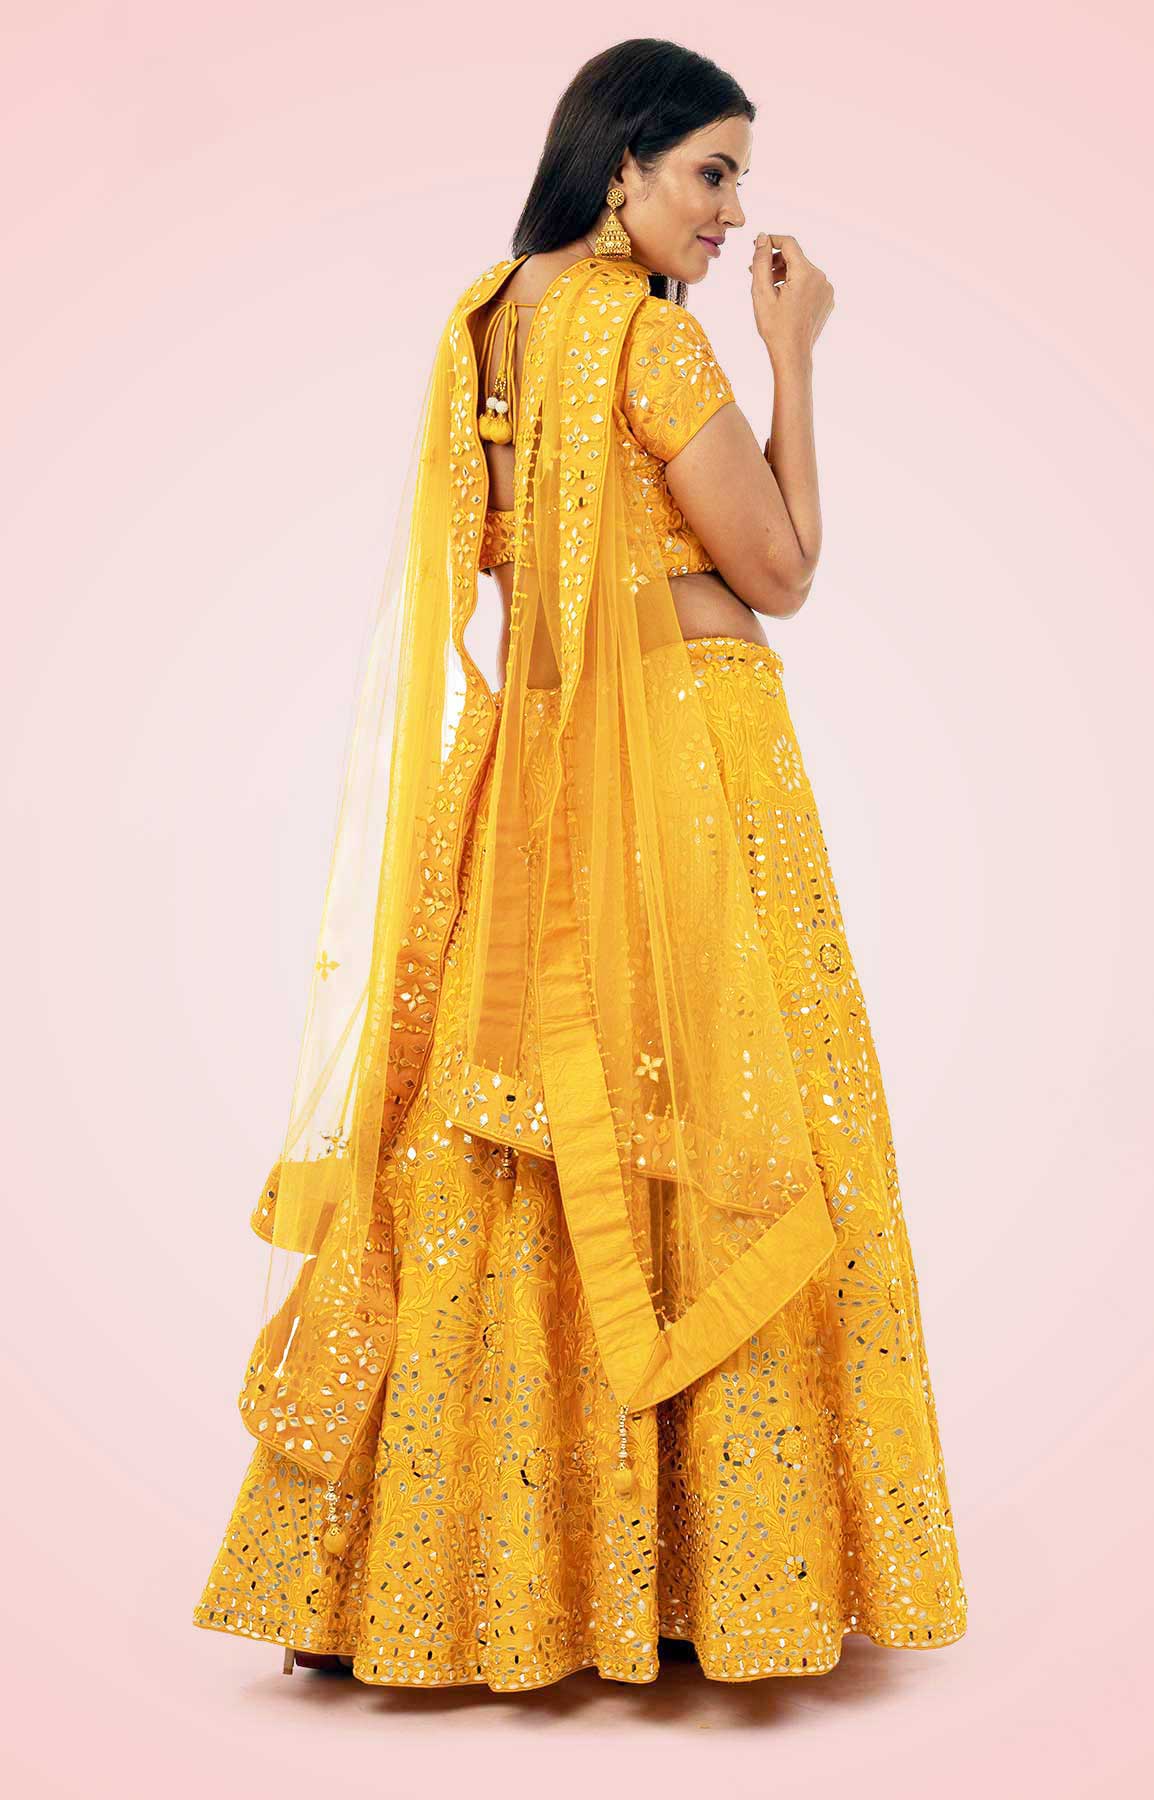 Golden Yellow Lehenga Choli With Leather And Mirror Work – Viraaya By Ushnakmals